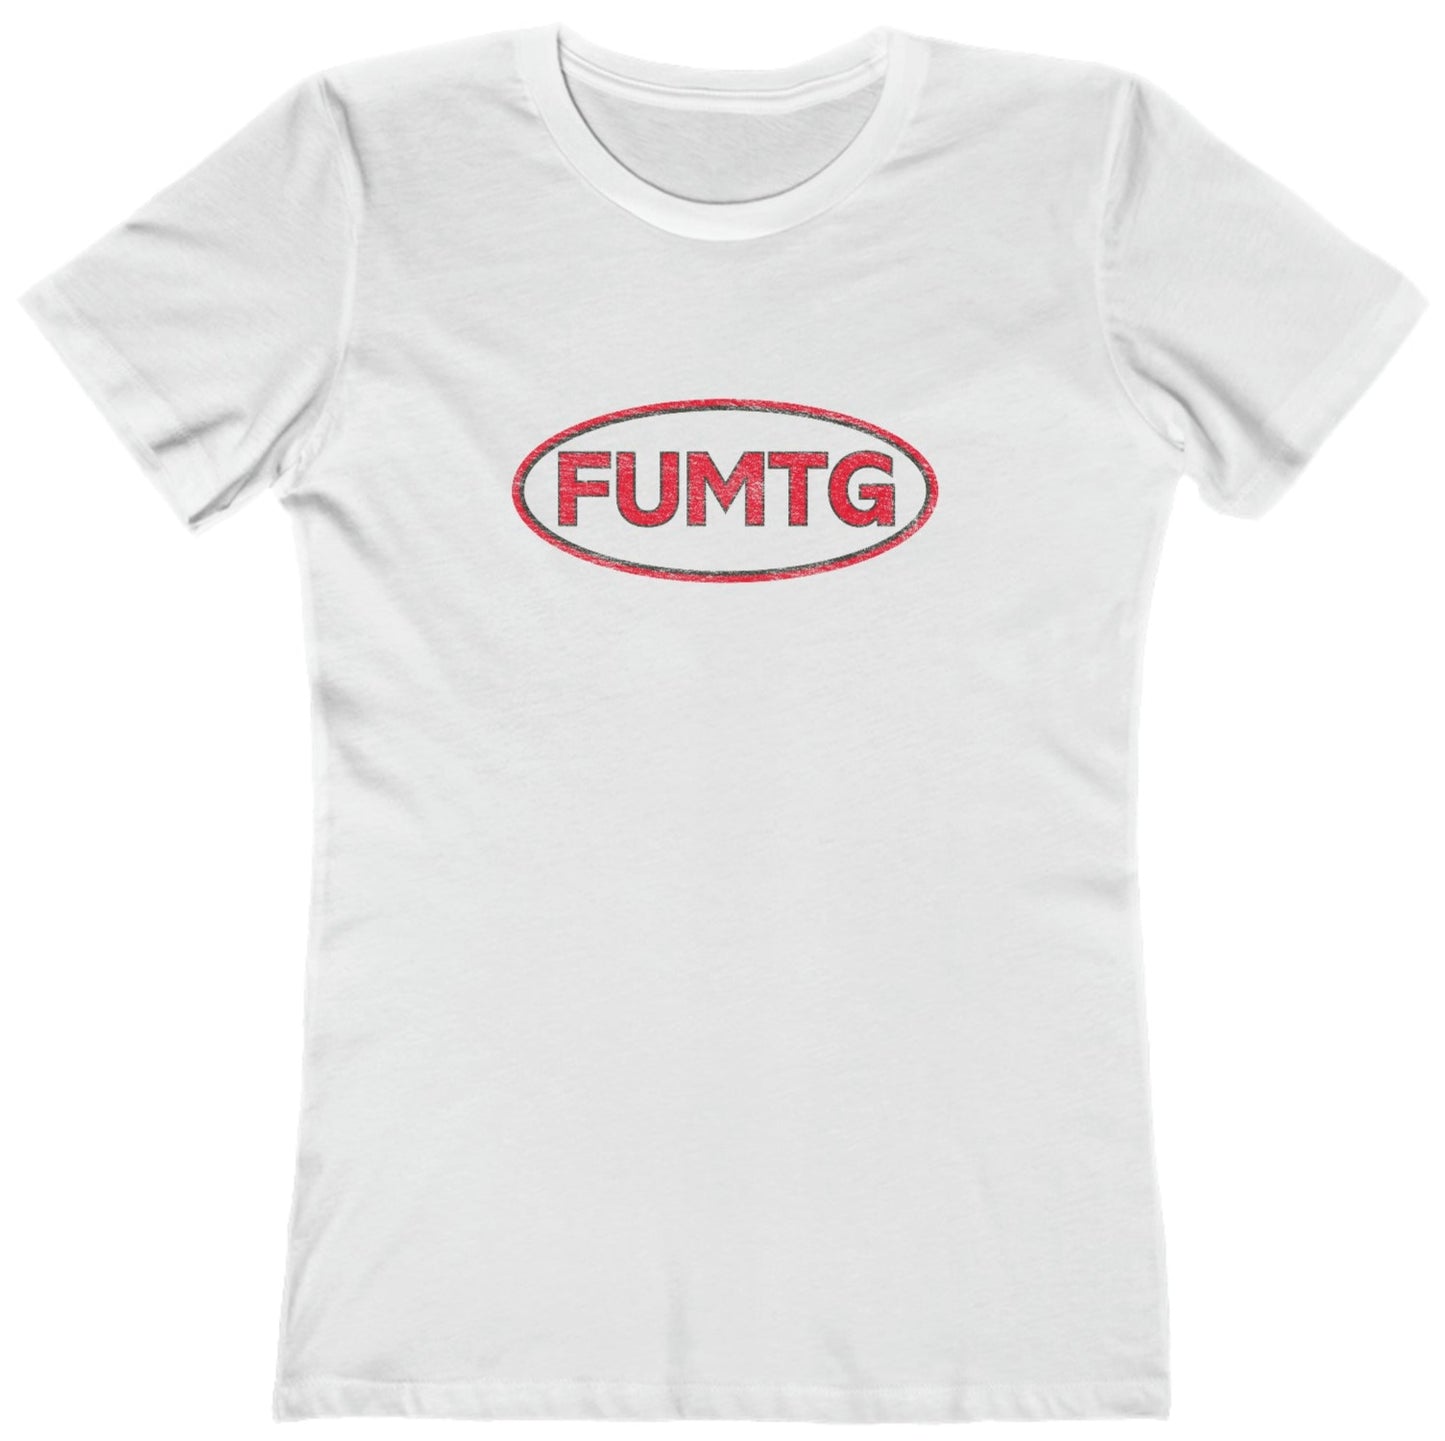 FUMTG - Women's T-Shirt